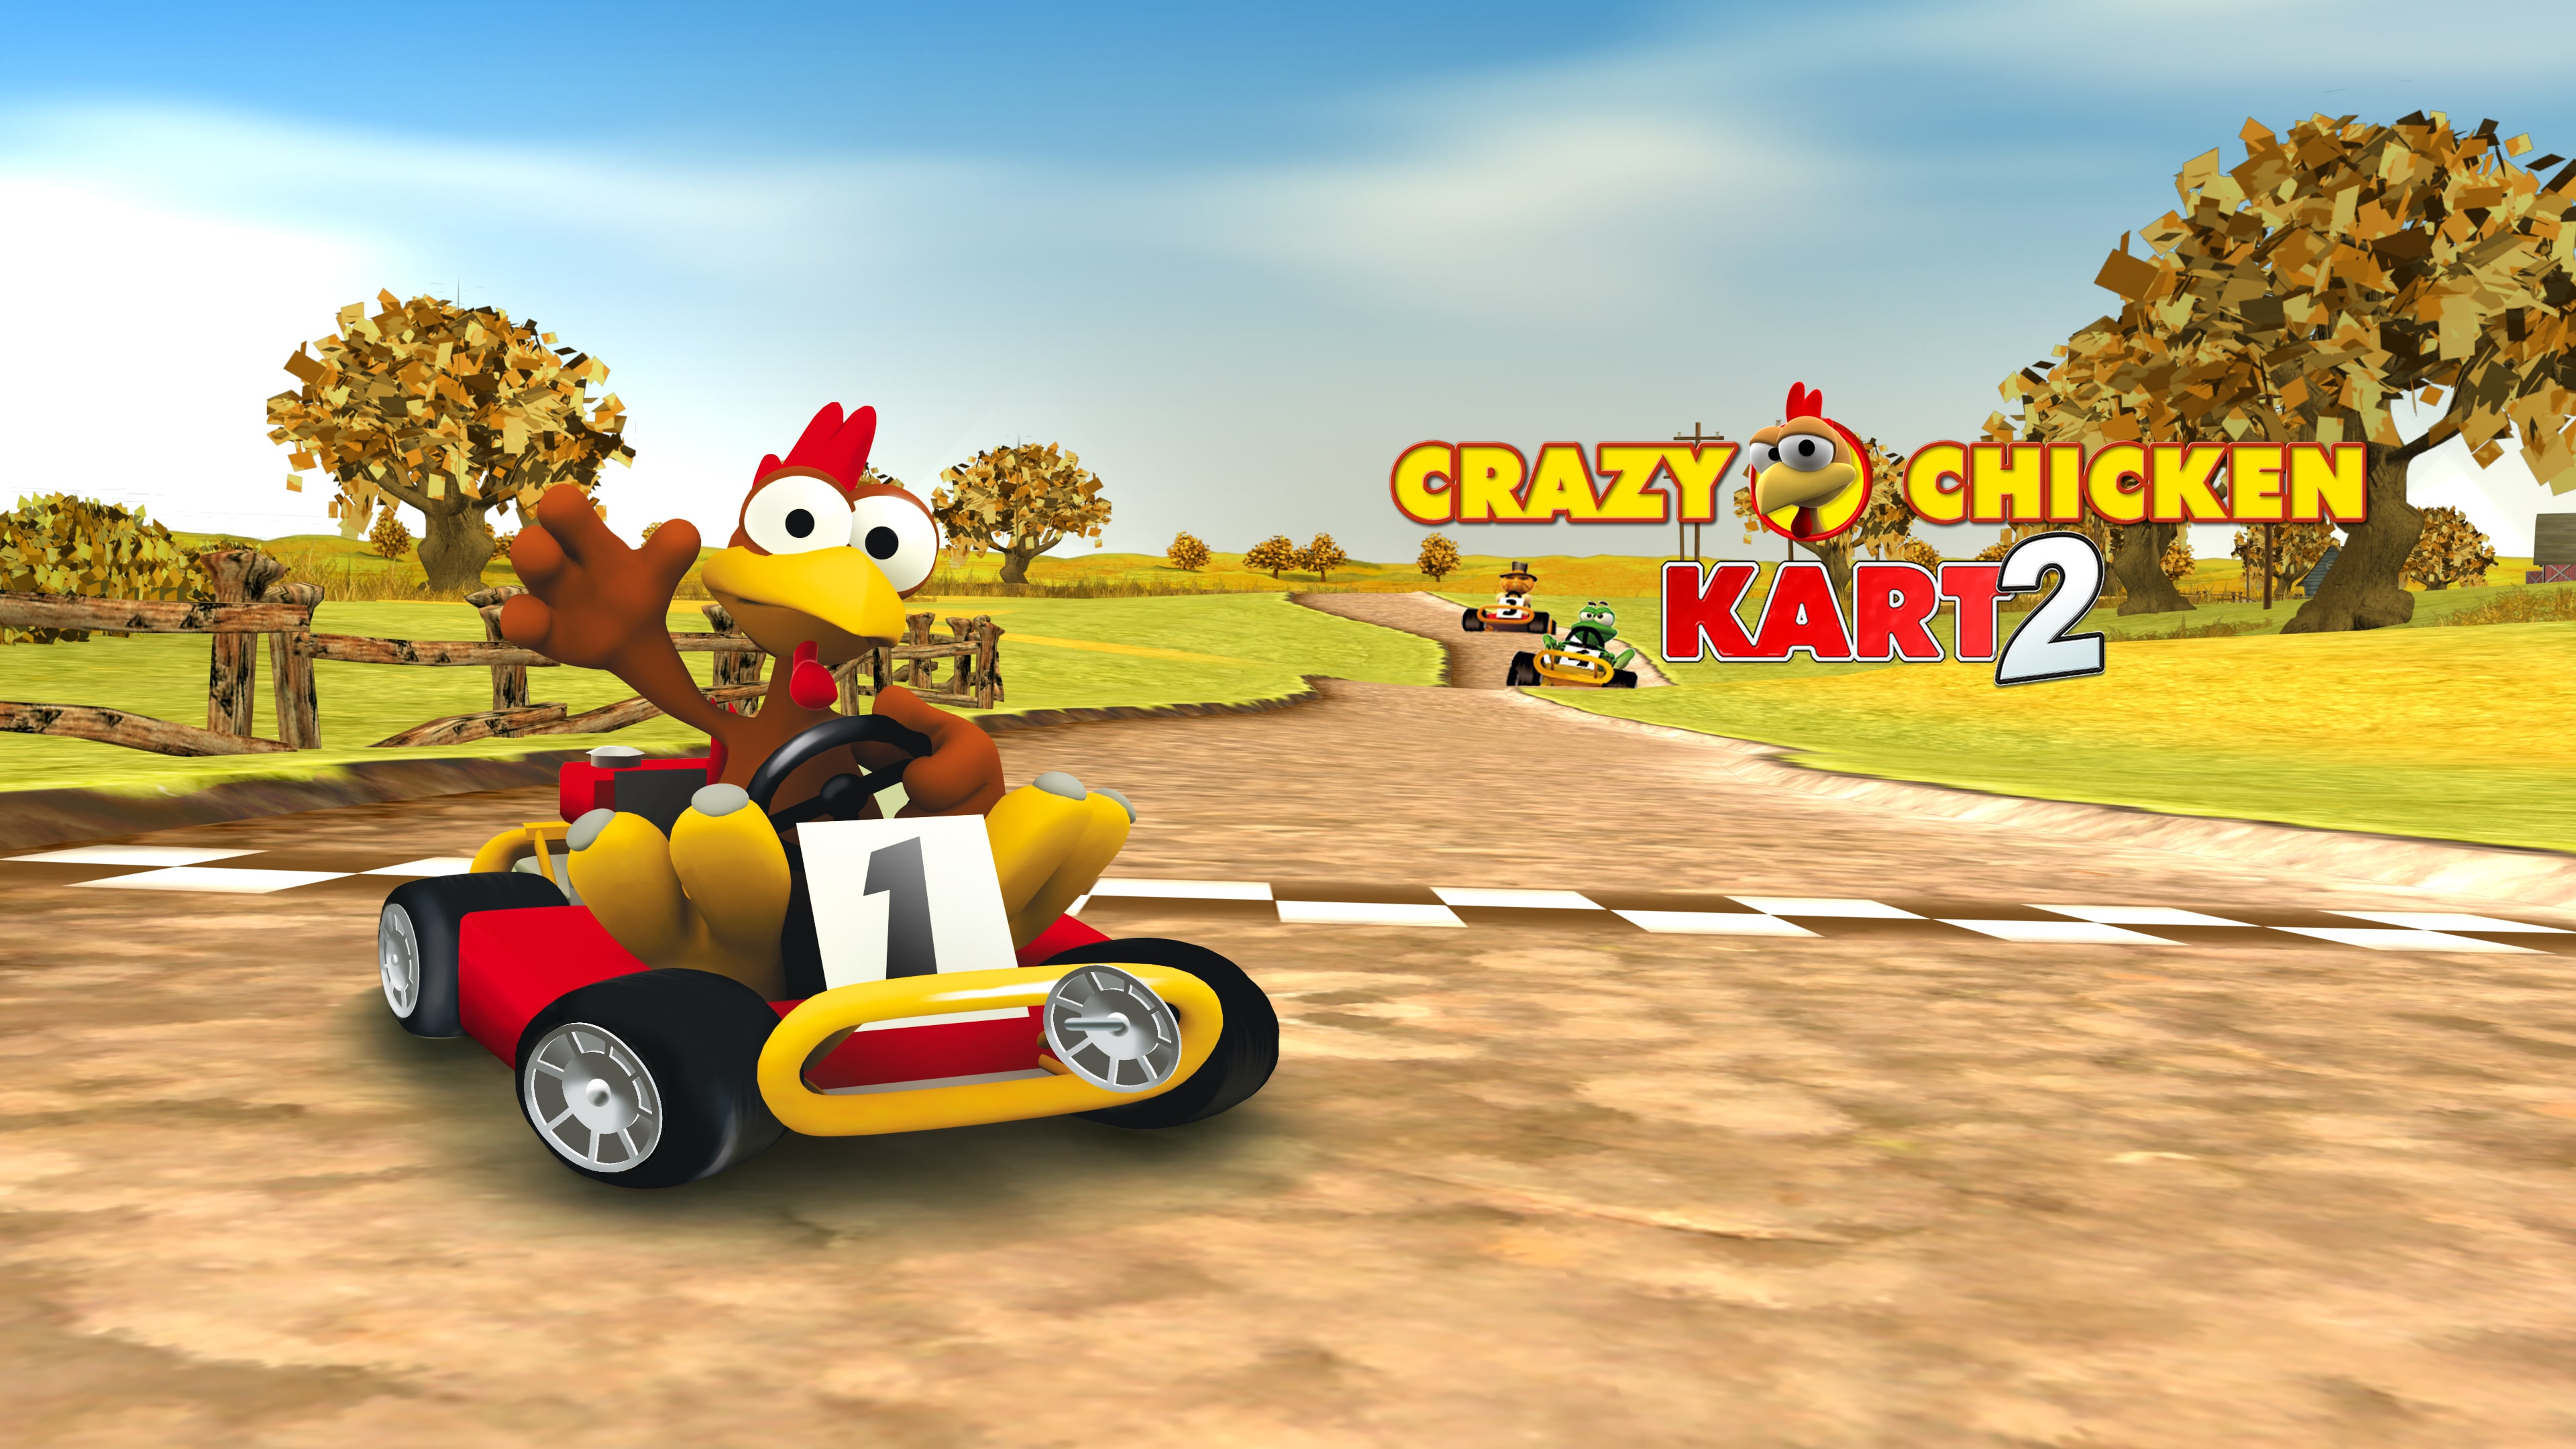 2 Chicken Kart Crazy